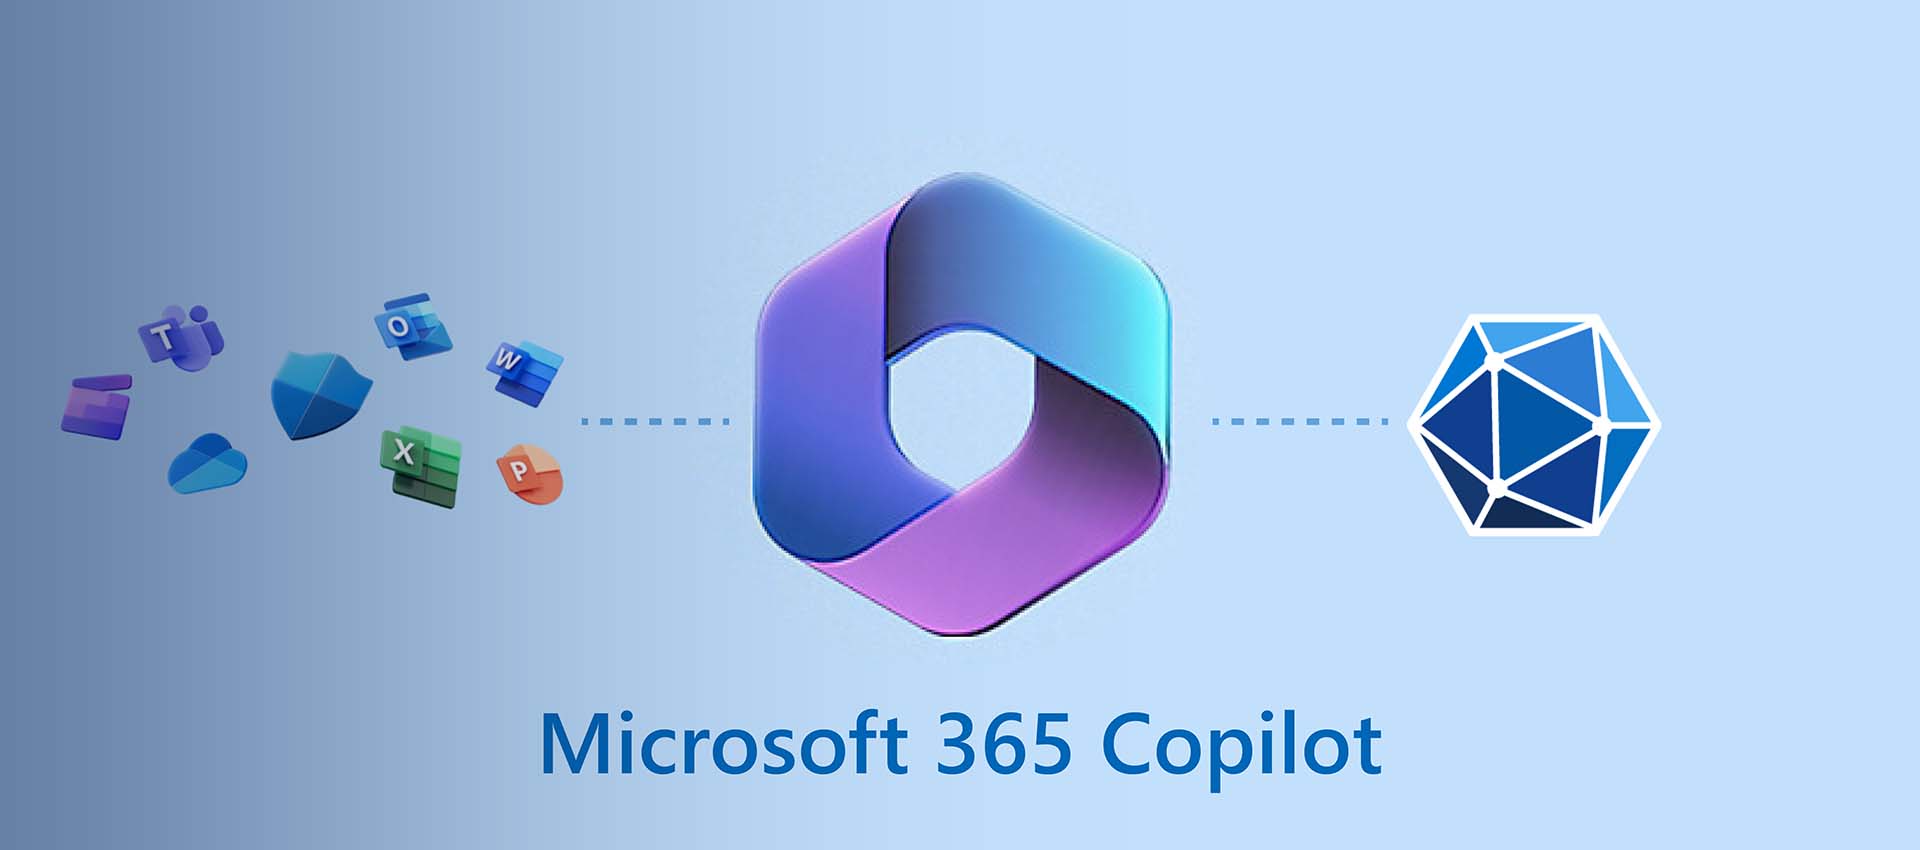 Microsoft Copilot đem lại nhiều tiềm năng trong kỷ nguyên số